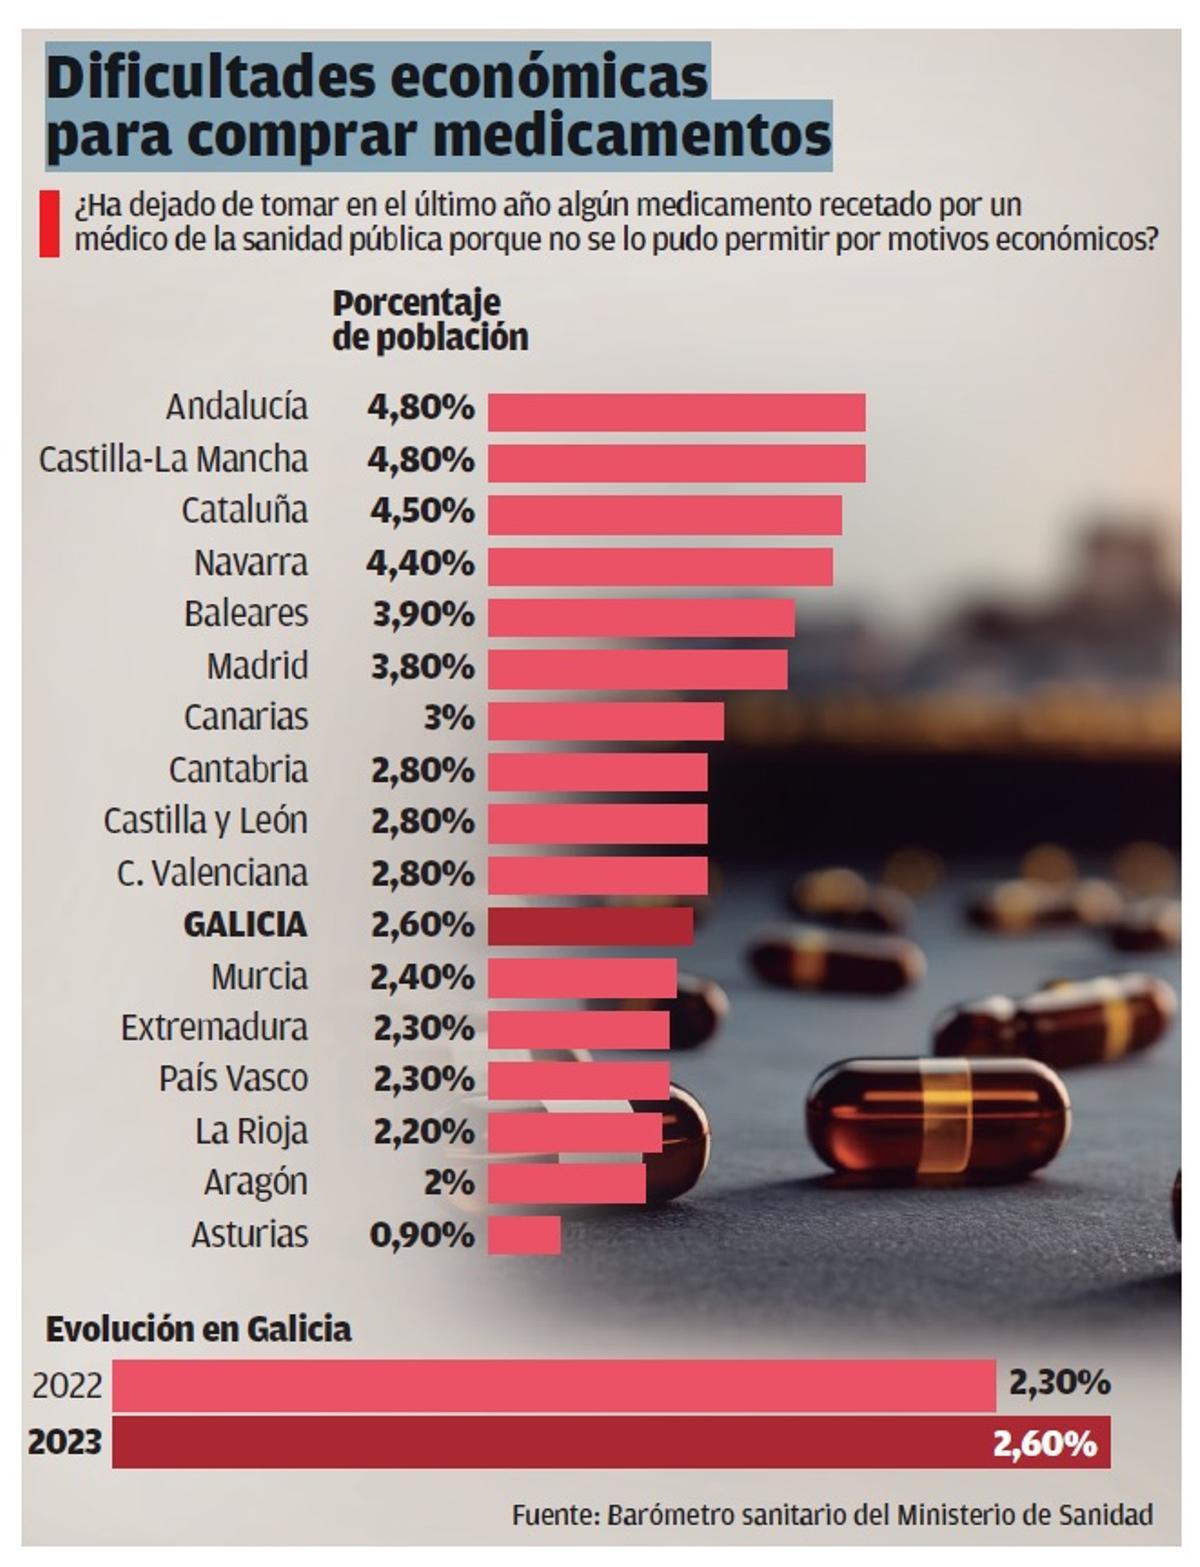 Dificultades económicas para comprar medicamentos en Galicia.